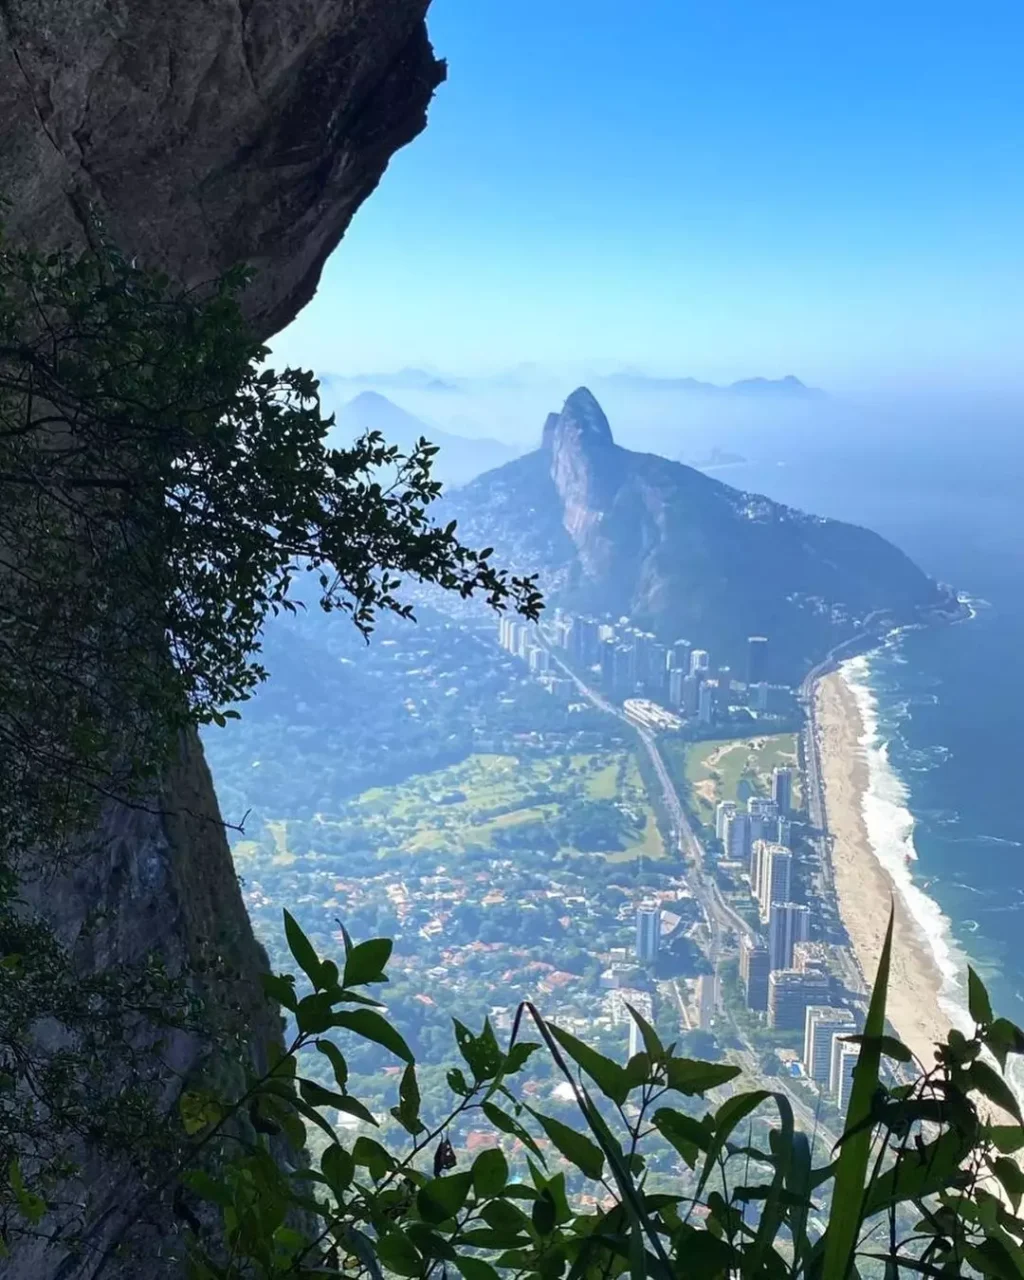 As Melhores trilhas em São Paulo e Rio de Janeiro
Mochilão pelo Brasil